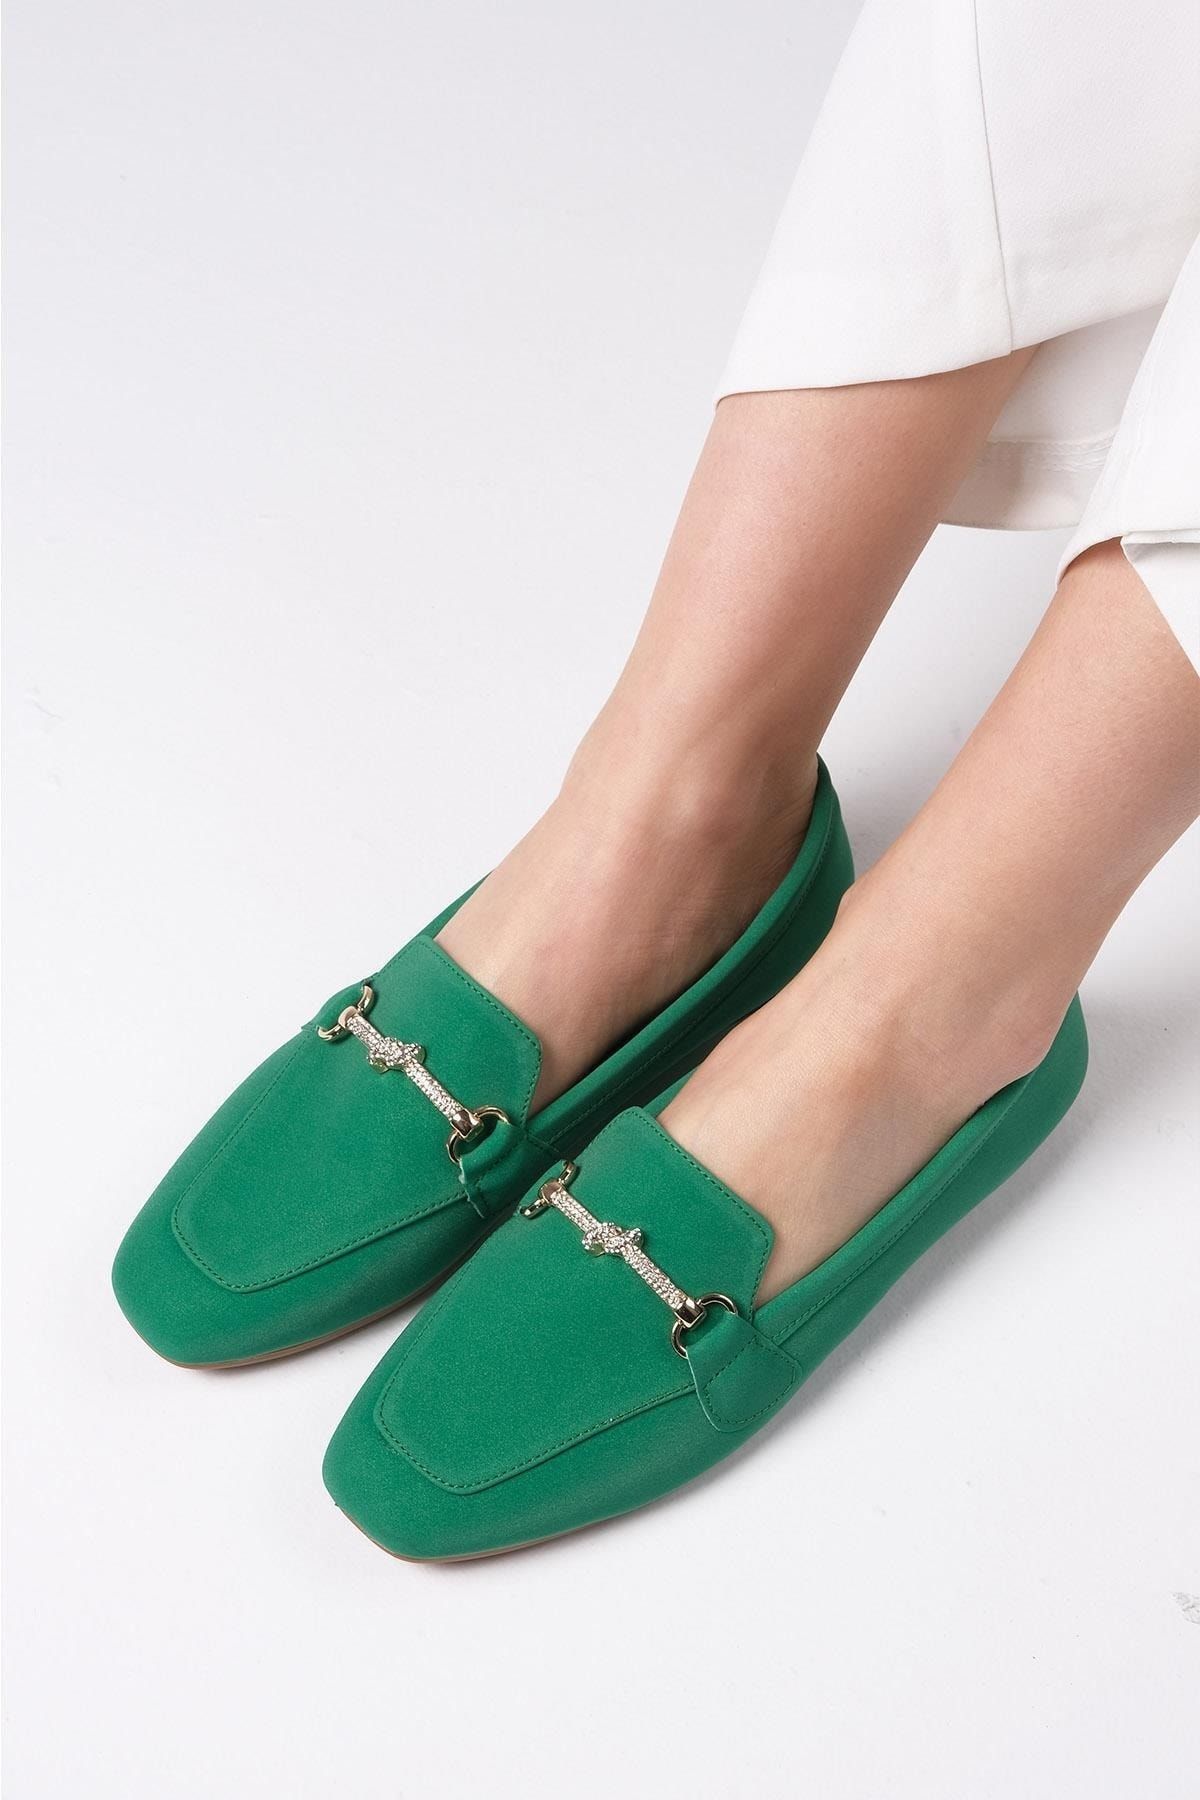 Mio Gusto Marisol Yeşil Renk Taşlı Tokalı Kadın Günlük Düz Loafer Ayakkabı